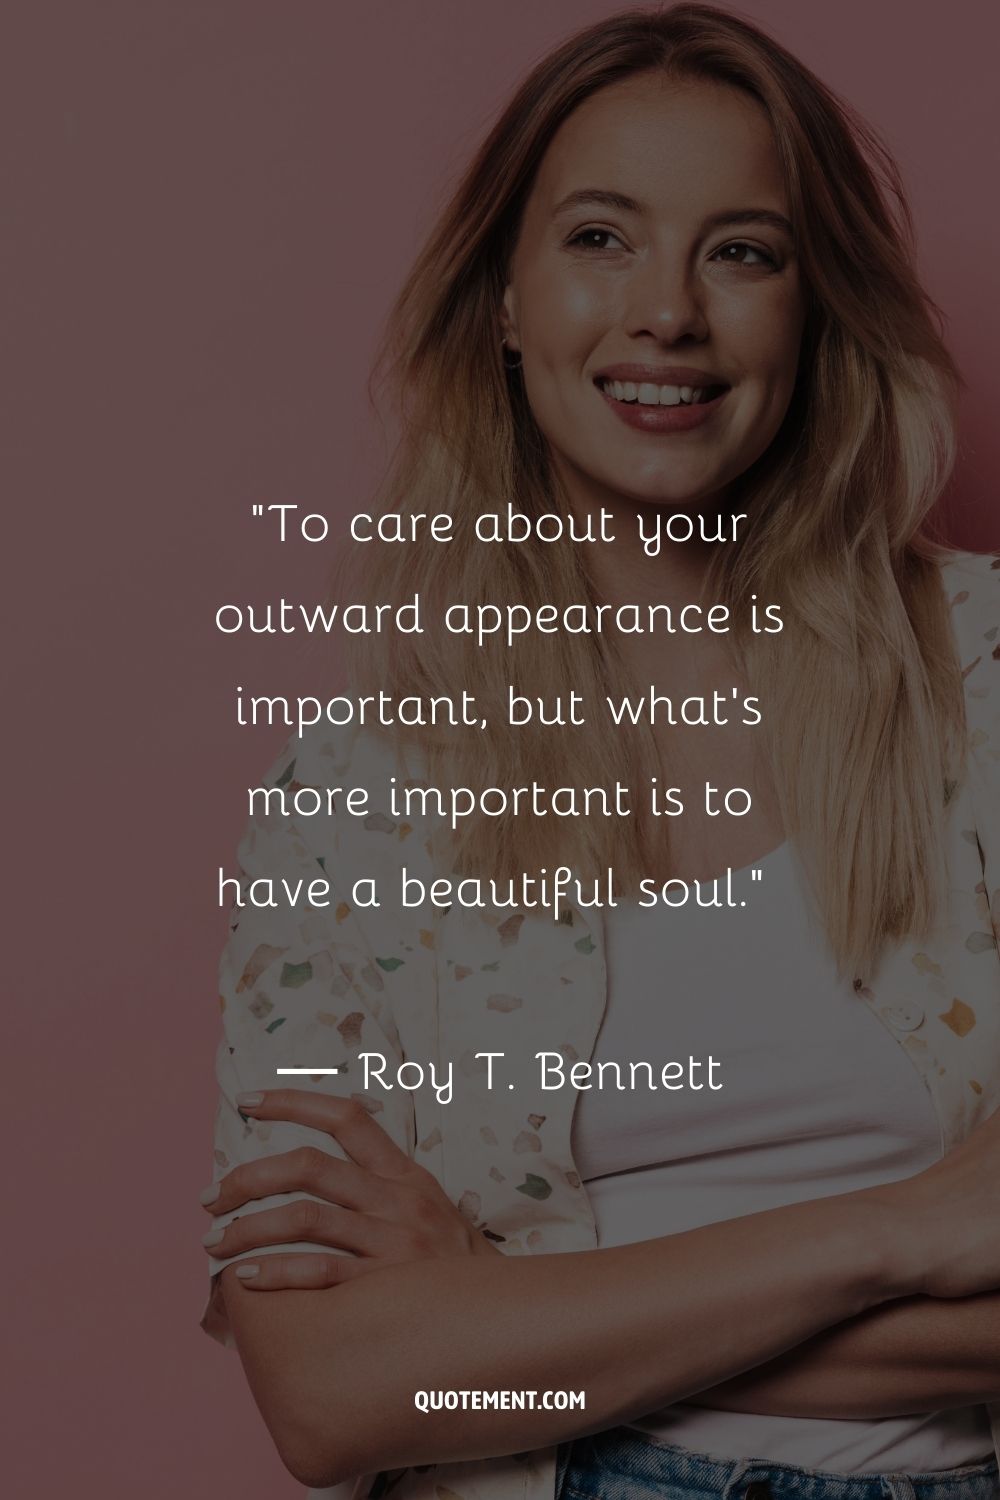 Cuidar tu aspecto exterior es importante, pero lo que es más importante es tener un alma bella